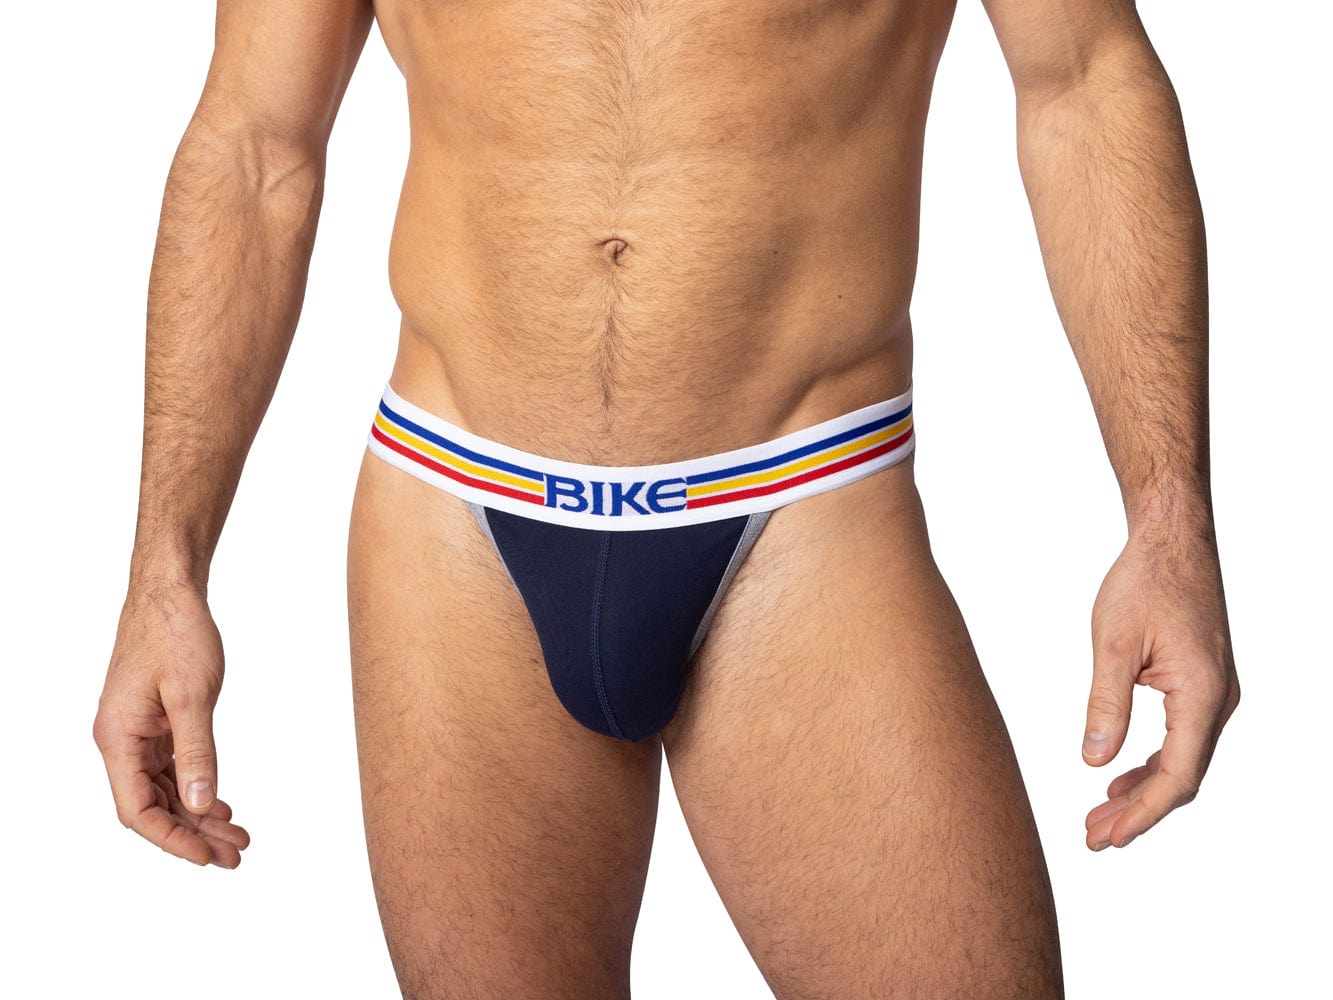 Navy Bike Athletic underwear jock briefs